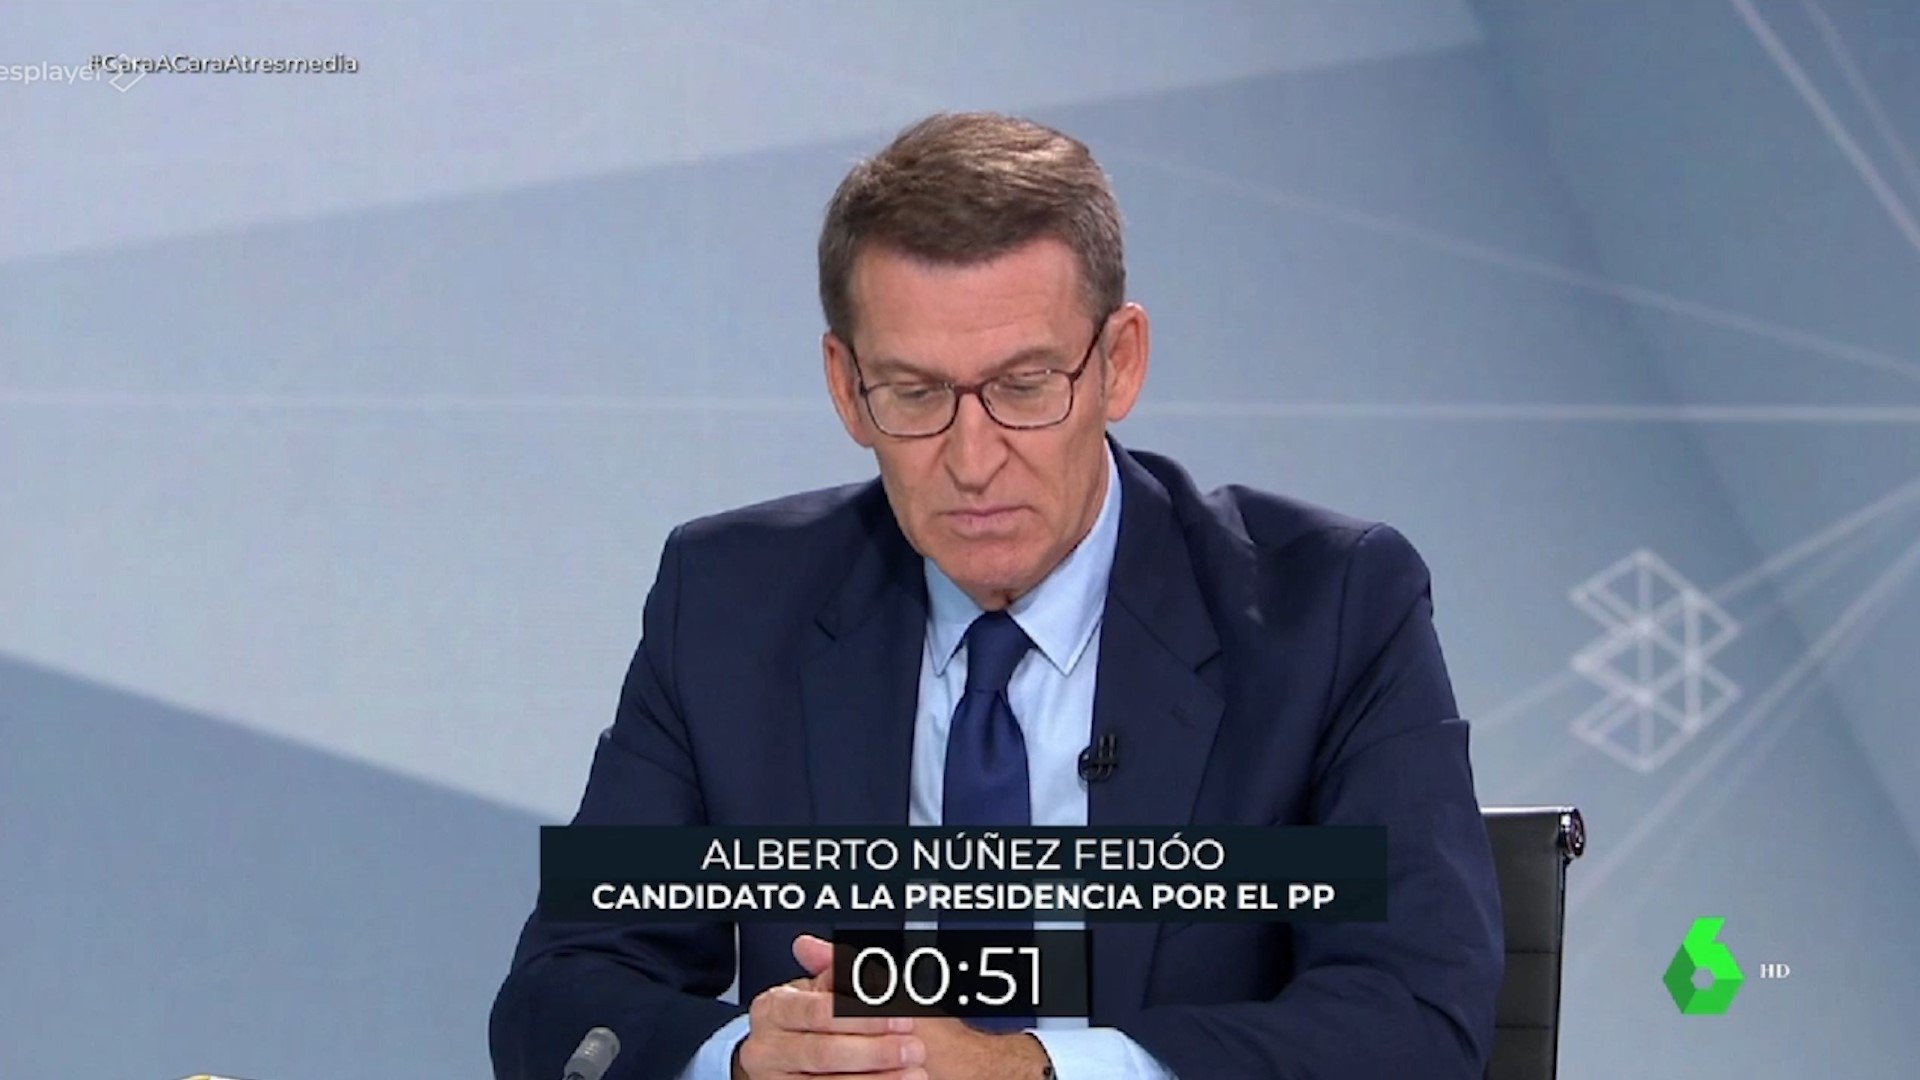 Minut d'or de Feijóo | VÍDEO: Així demana el vot en el debat electoral amb Sánchez